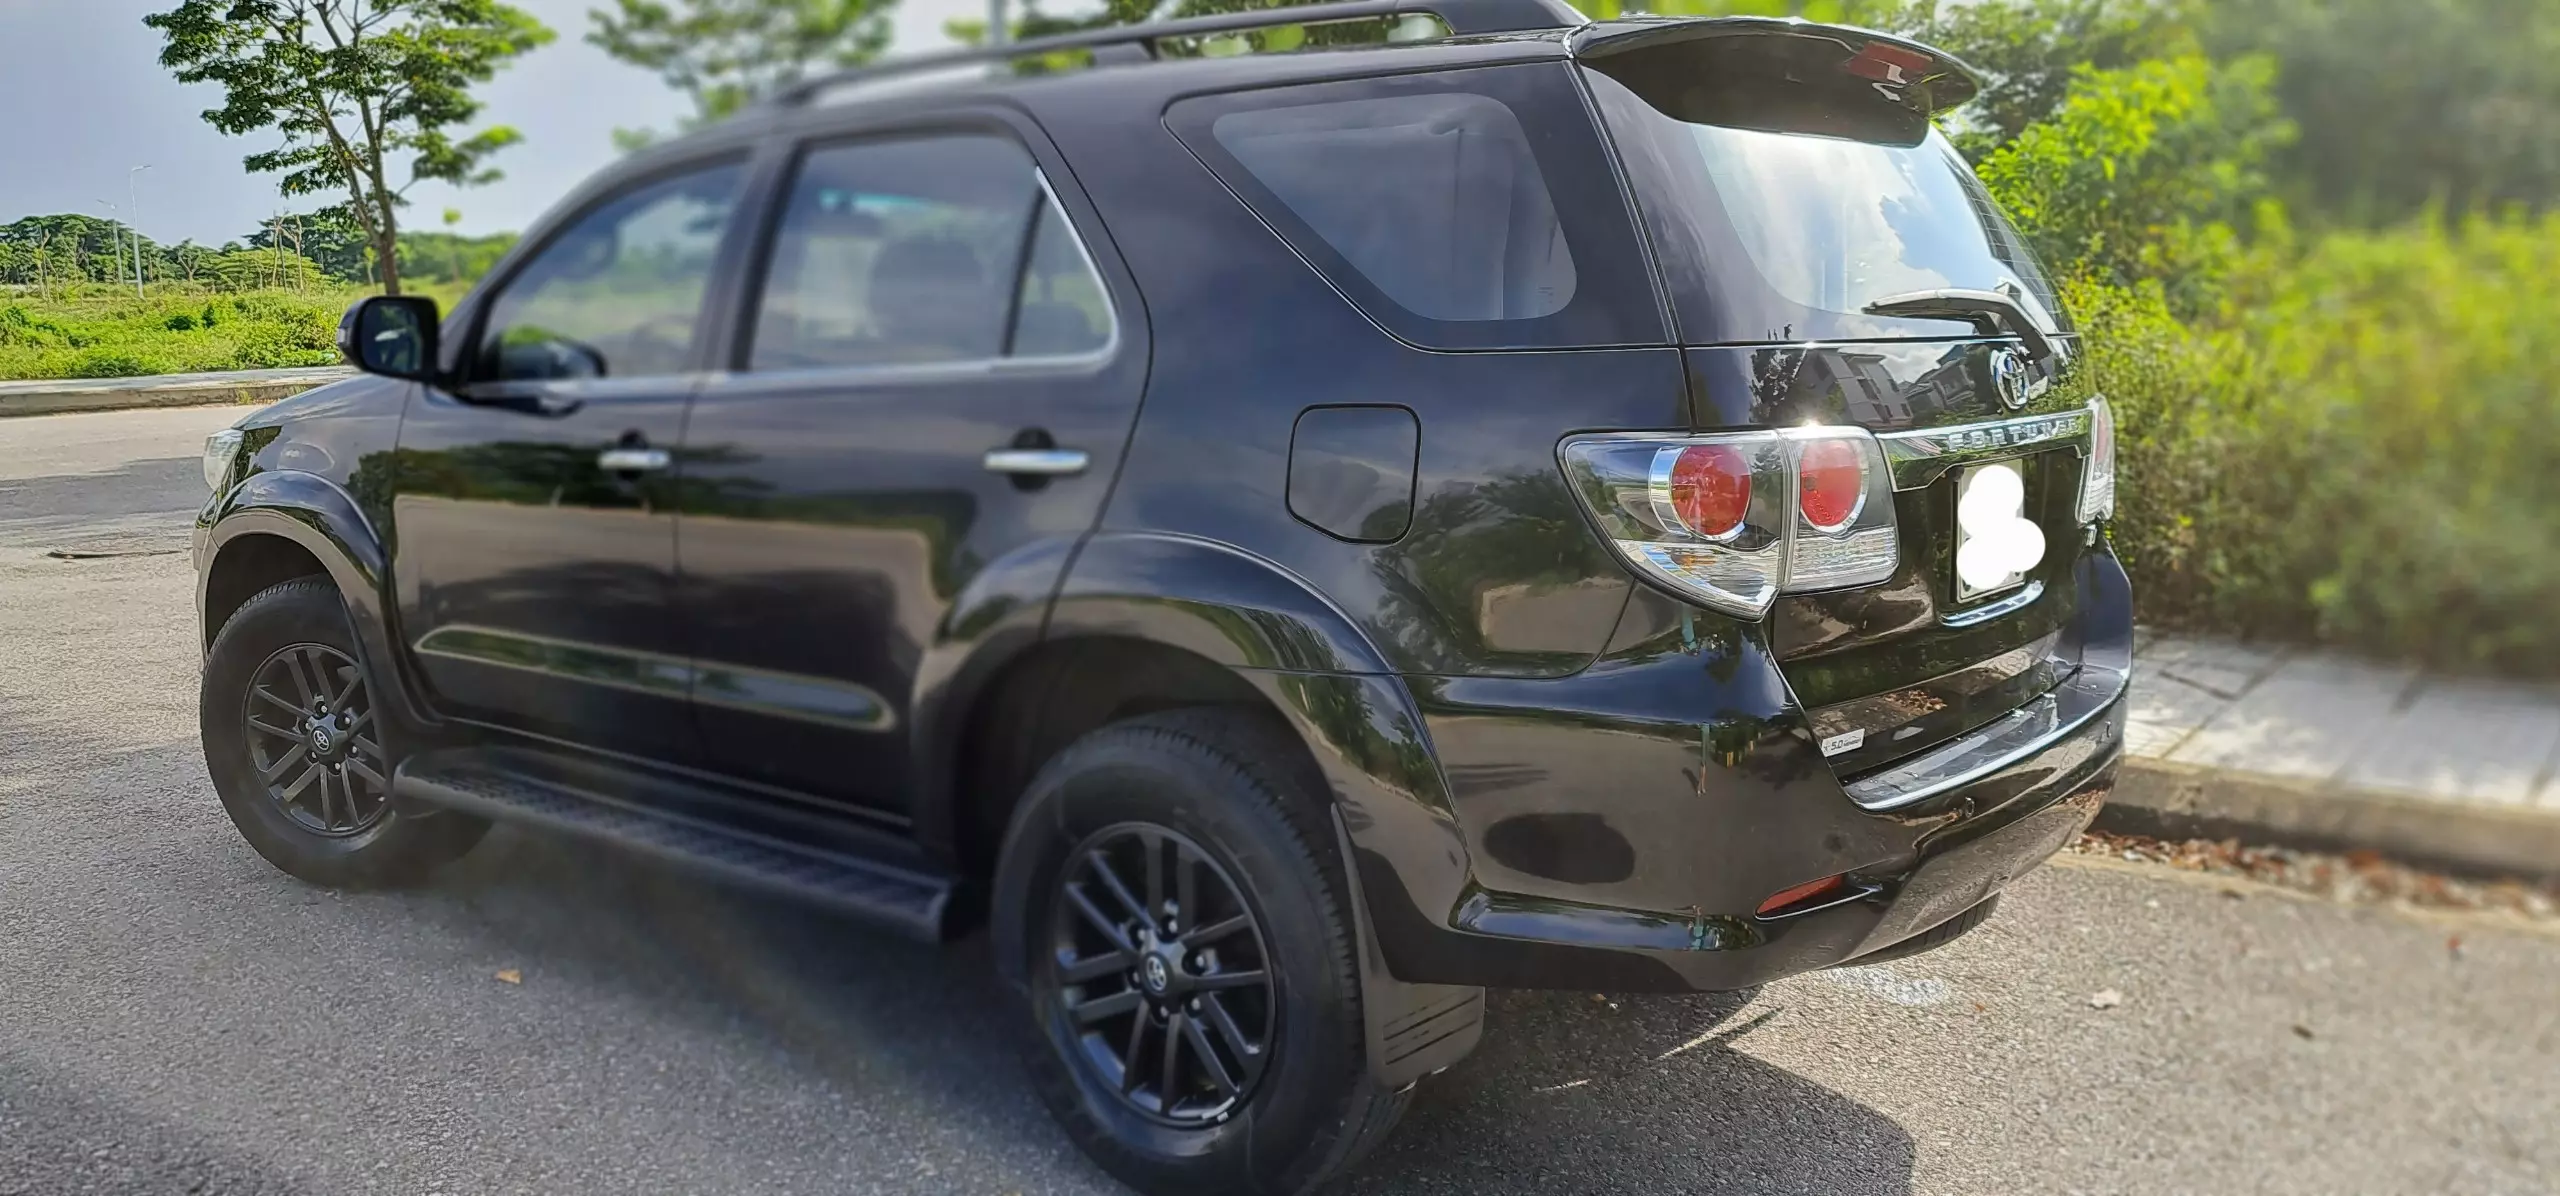 Chính chủ bán xe Toyota Fortuner đời 2015 màu đen nội thất kem, 2.7 một cầu máy xăng số tự động.-3